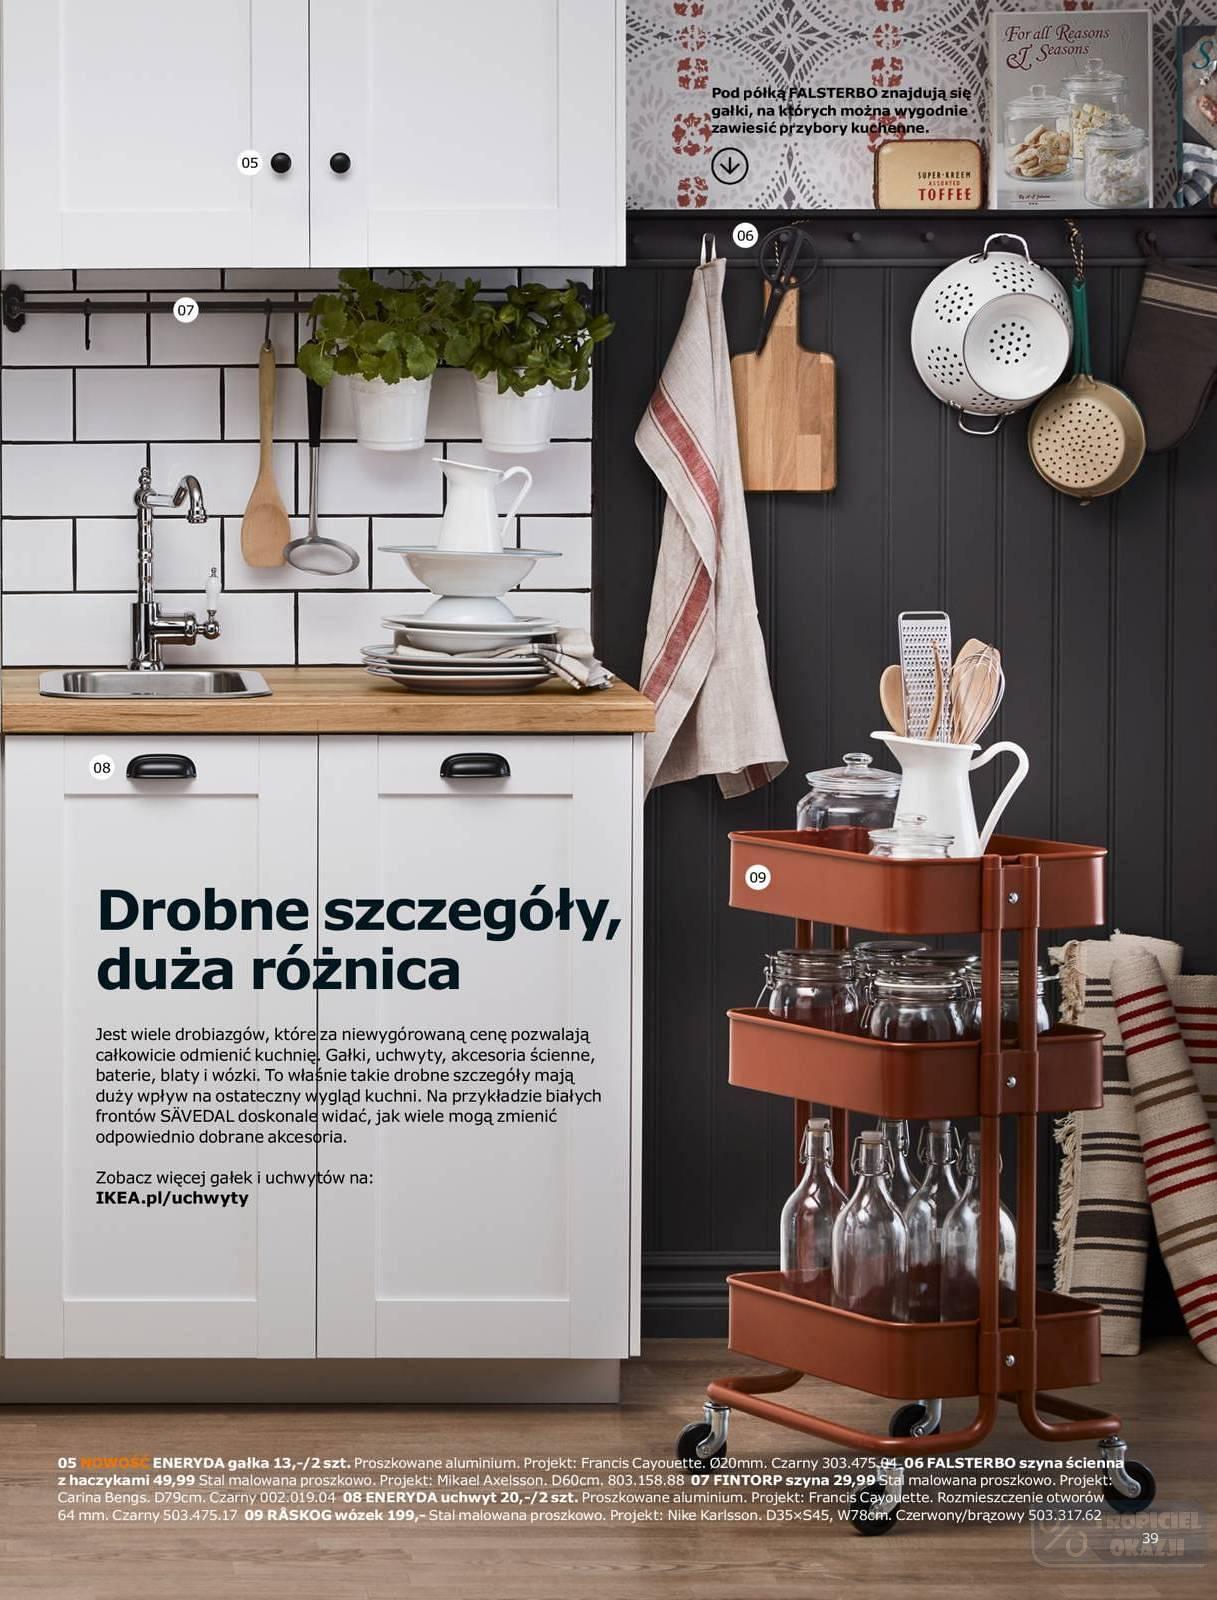 Gazetka Promocyjna I Reklamowa Ikea Katalog Kuchnie 2018 Od 12 09 2017 Do 31 01 2018 S 39